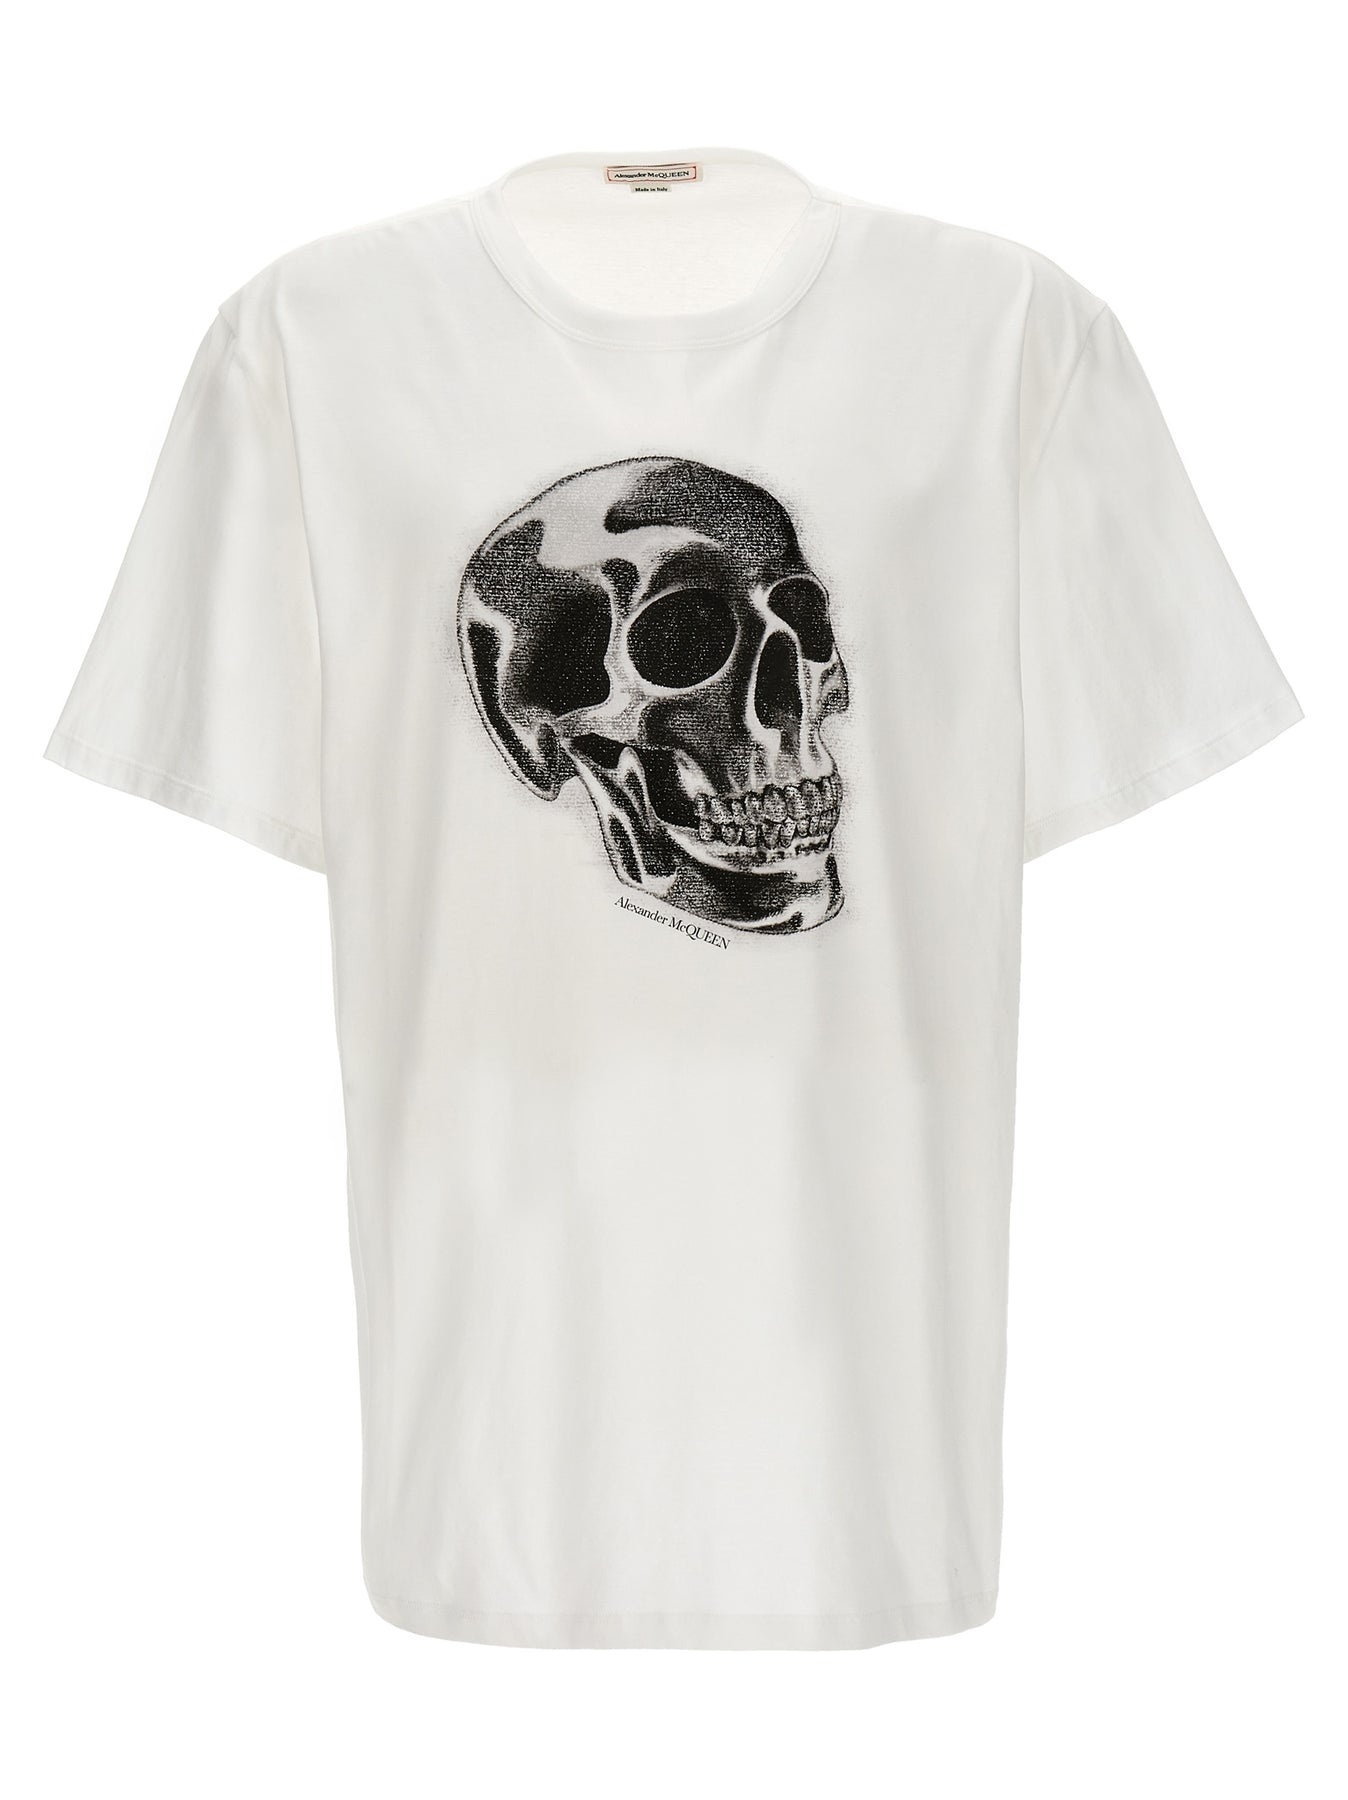 Skull T-Shirt White/Black - 1